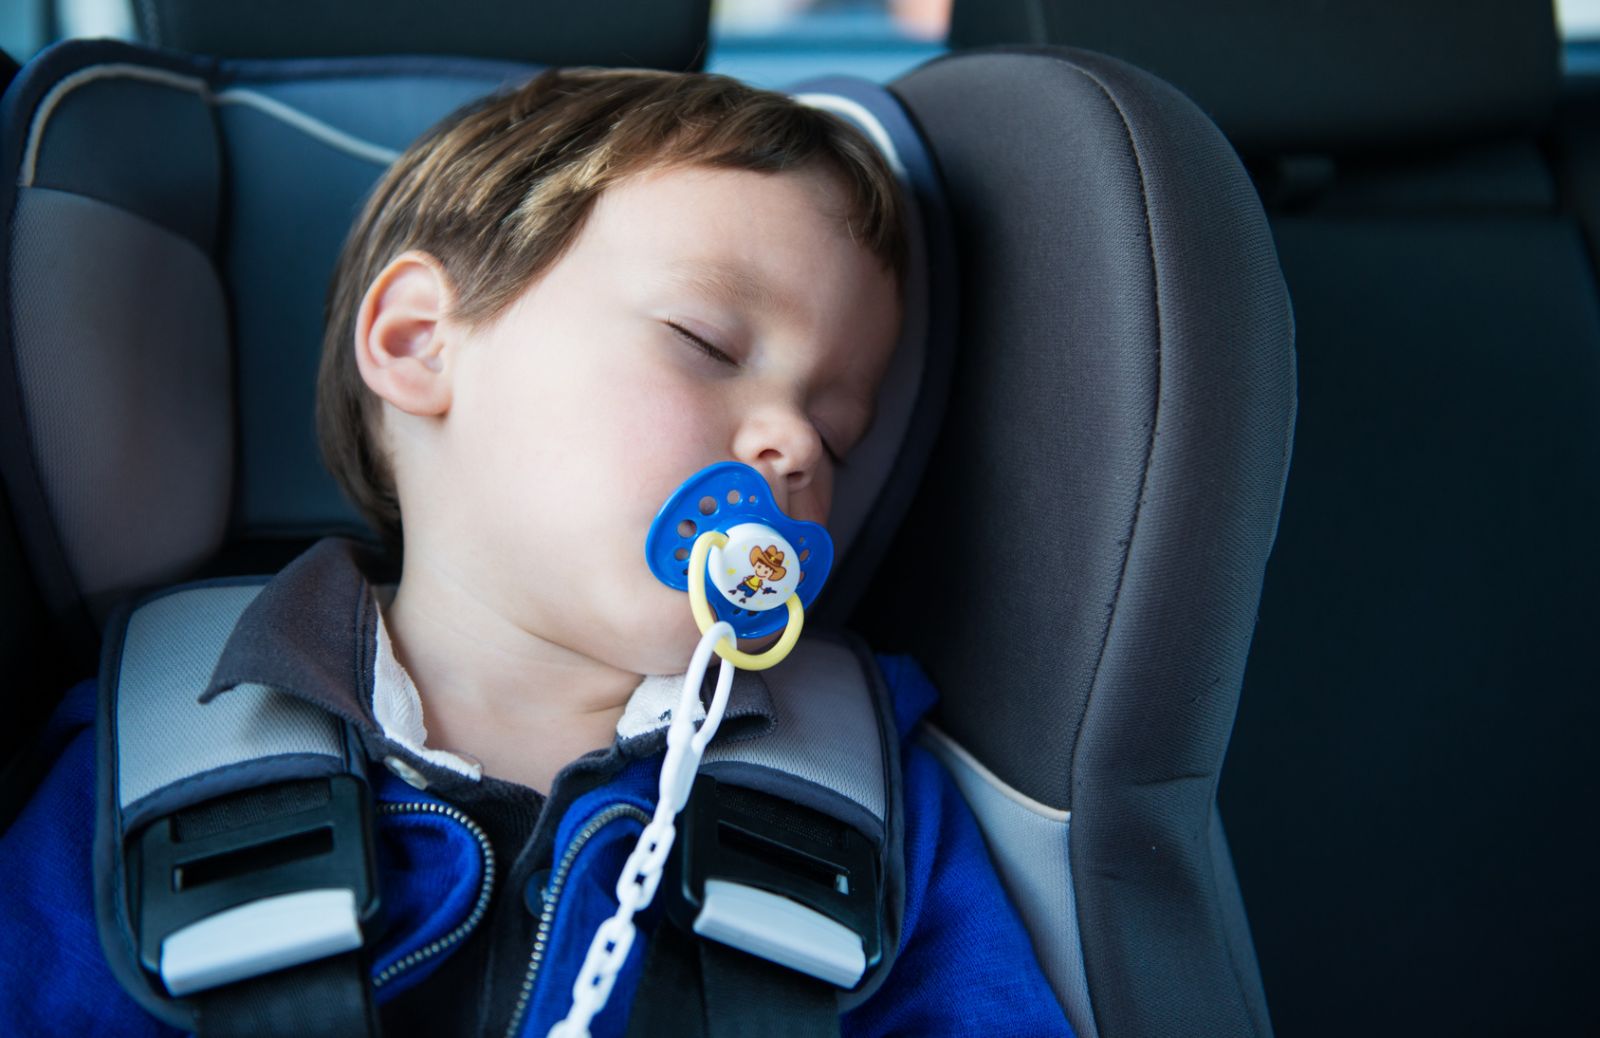 Bambini dimenticati in auto: i dispositivi salva vita che avvisano i genitori